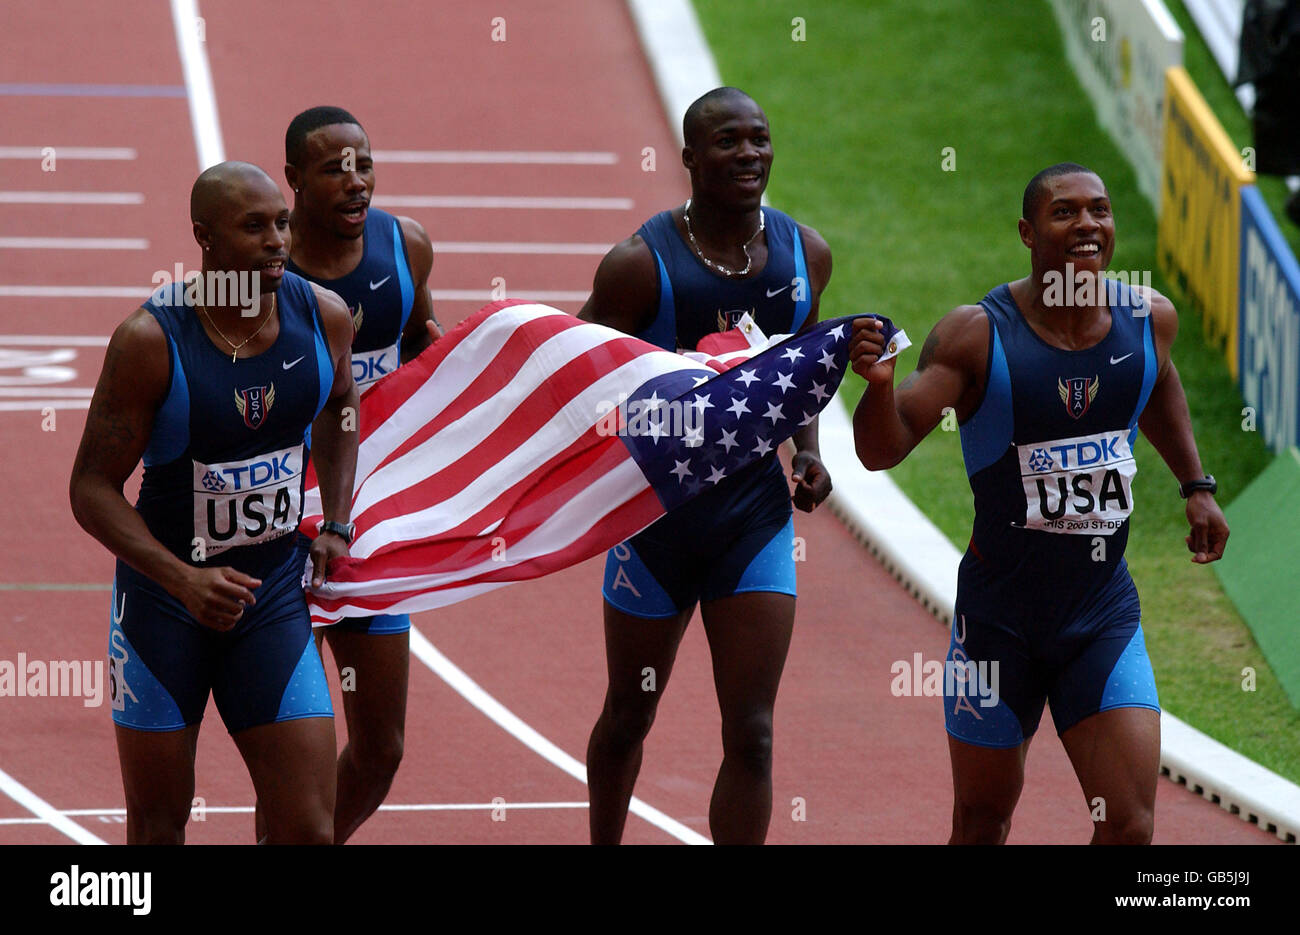 Leichtathletik - IAAF Leichtathletik-Weltmeisterschaften - Paris 2003 - 4x100-m-Staffelfinale der Männer. Das 4x100-m-Staffel-Team der USA feiert den Sieg im Finale Stockfoto